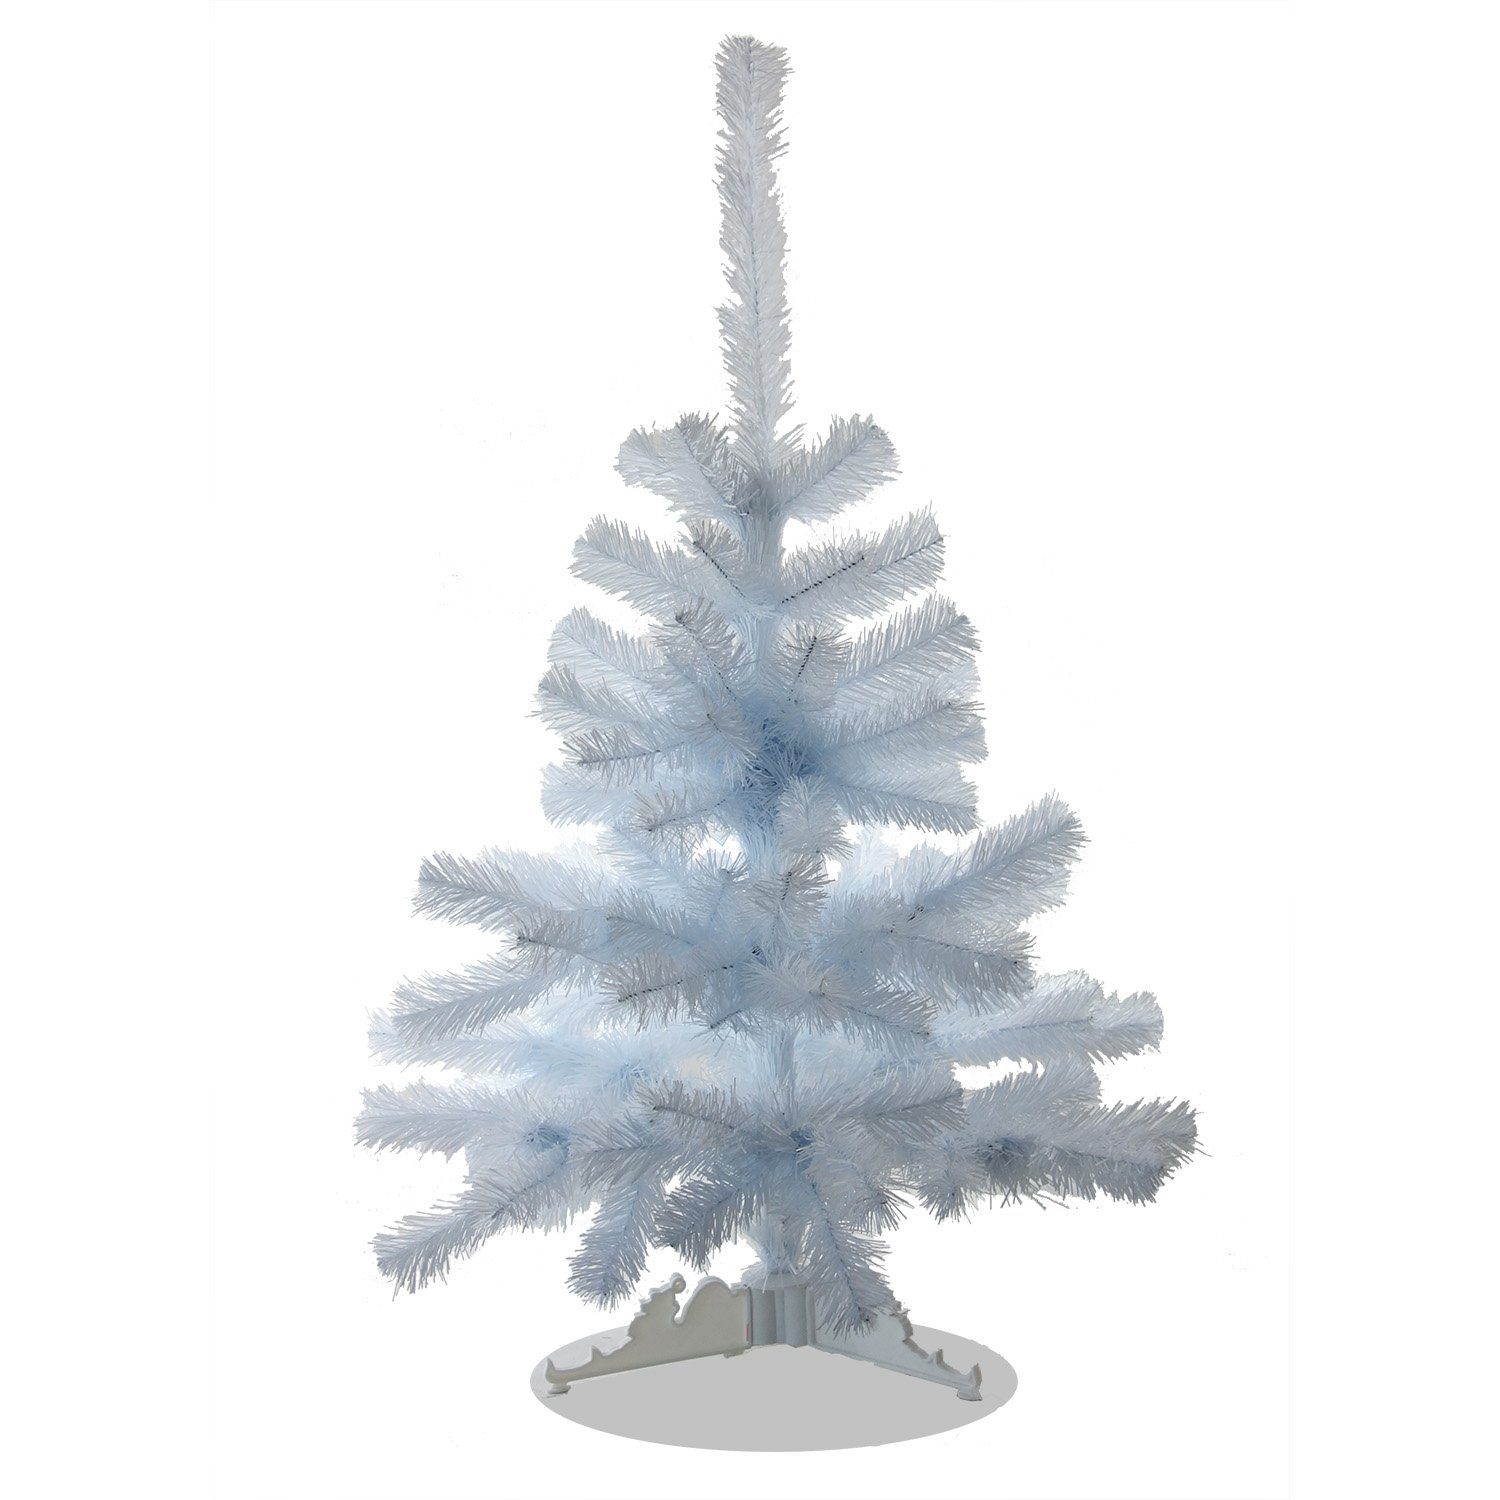 Decorwelt Weiß Tannenbaum Weihnachtsbaum 100-220cm Künstlicher Weihnachtsbaum Christbaum Künstlicher